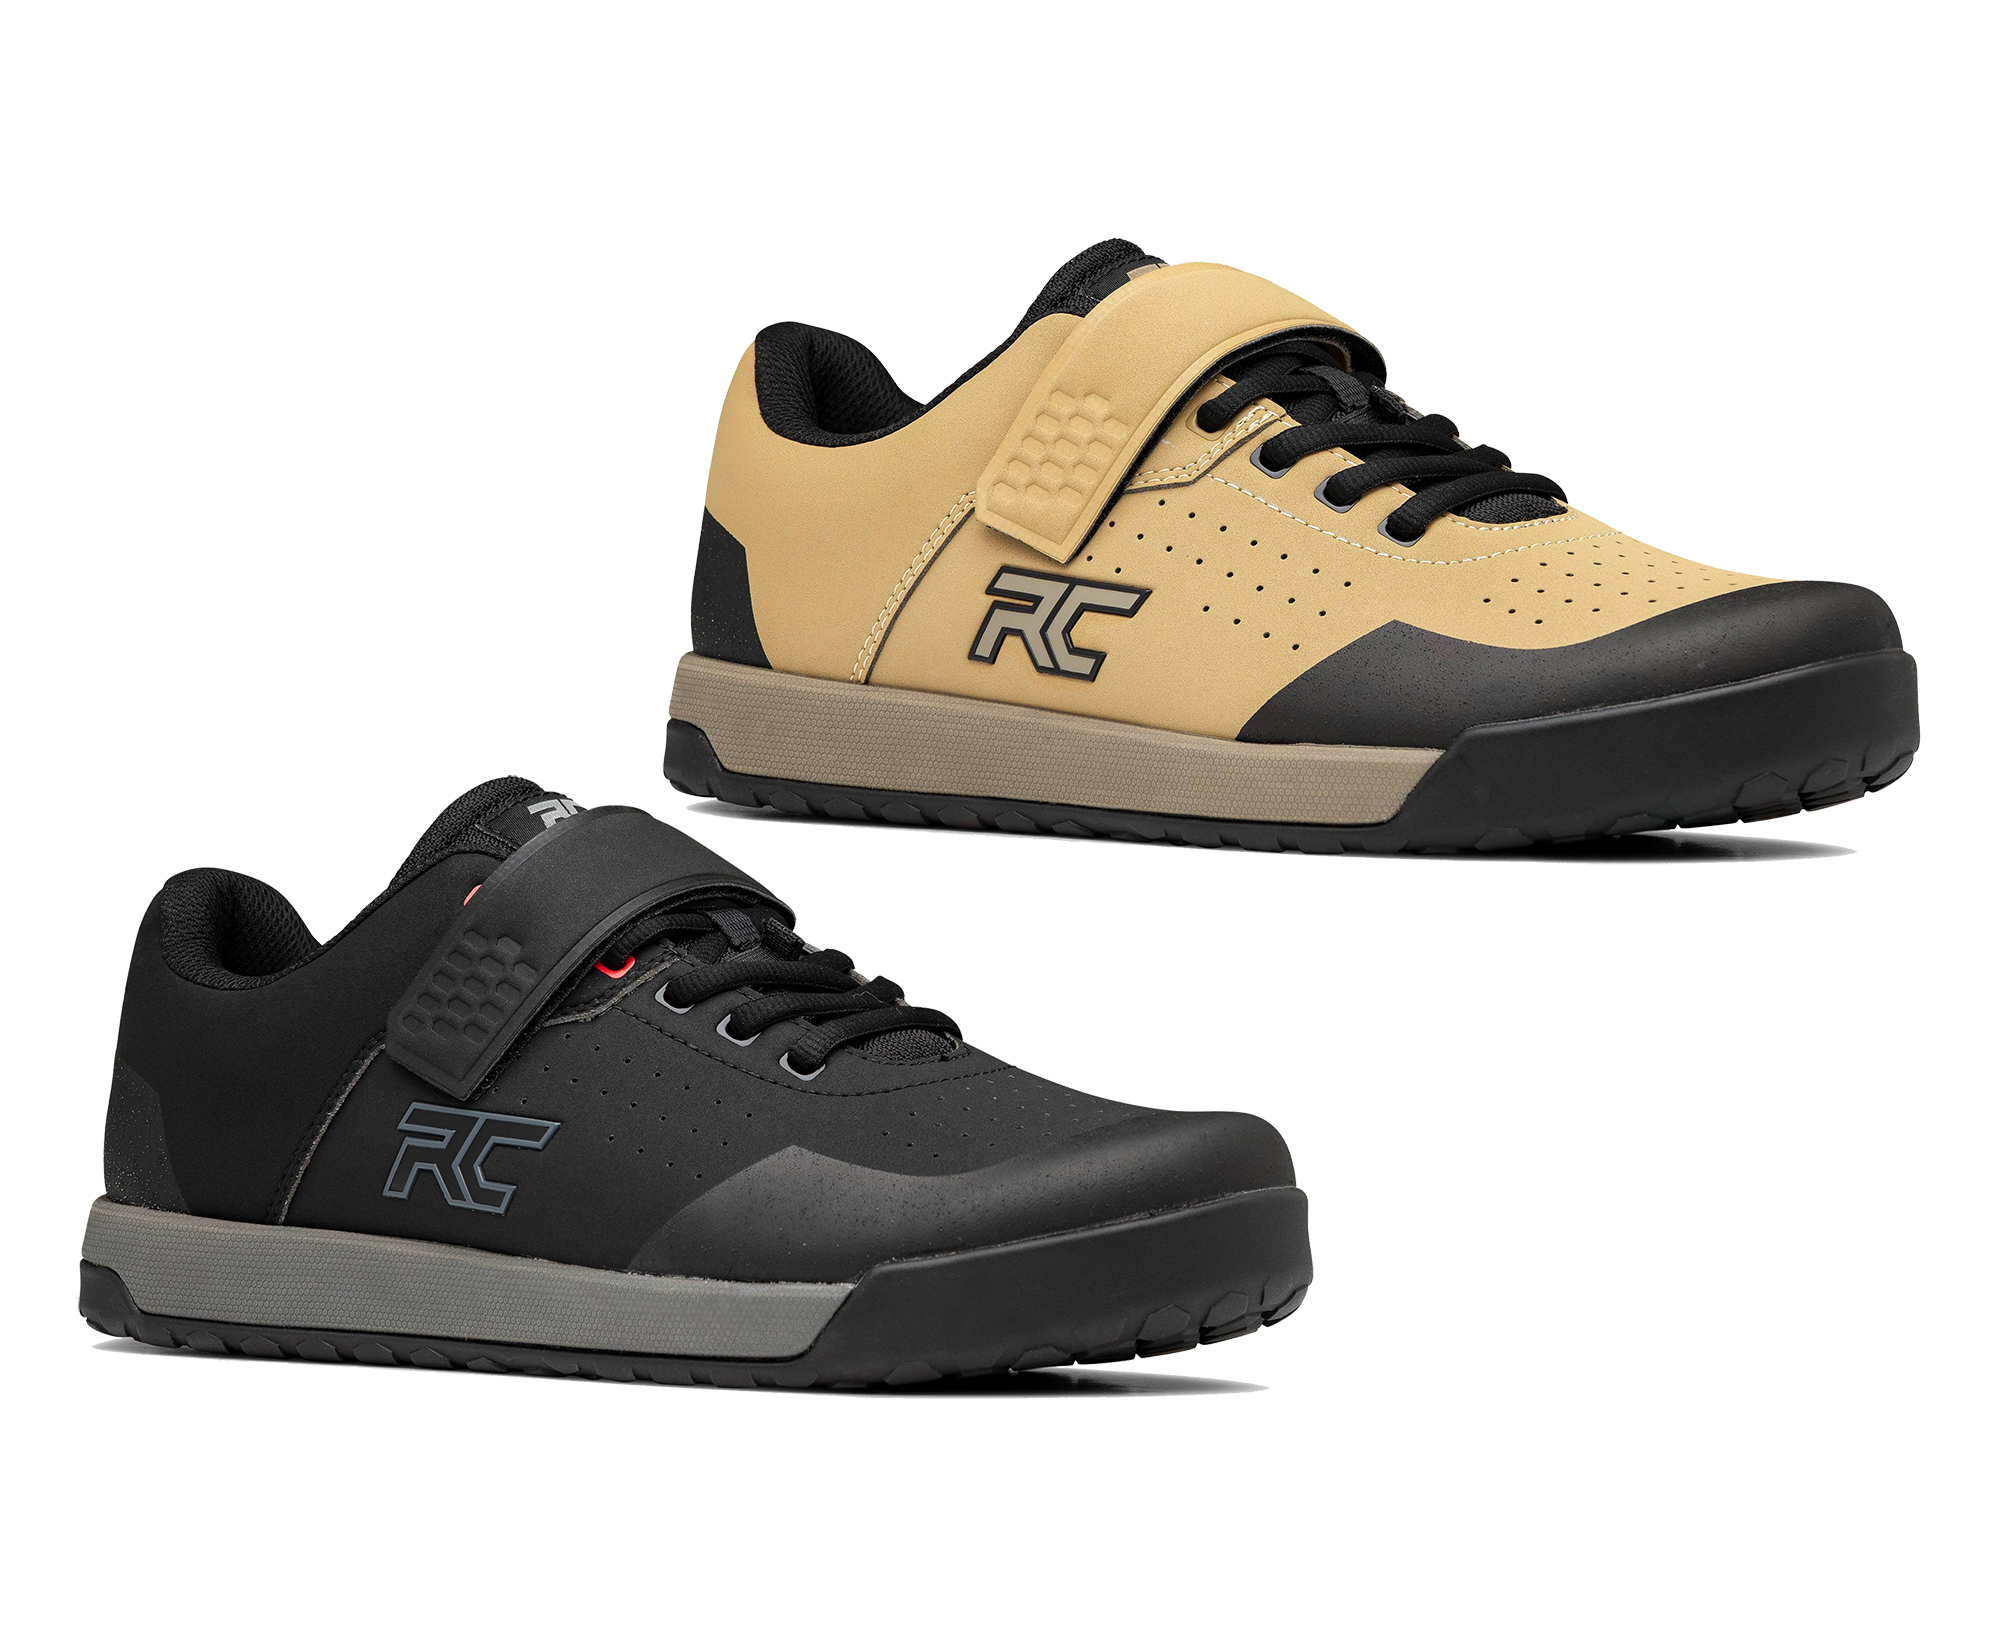 Ride Concepts Hellion Clip Mtb Shoes 2022 - £125.95 | Shoes - MTB